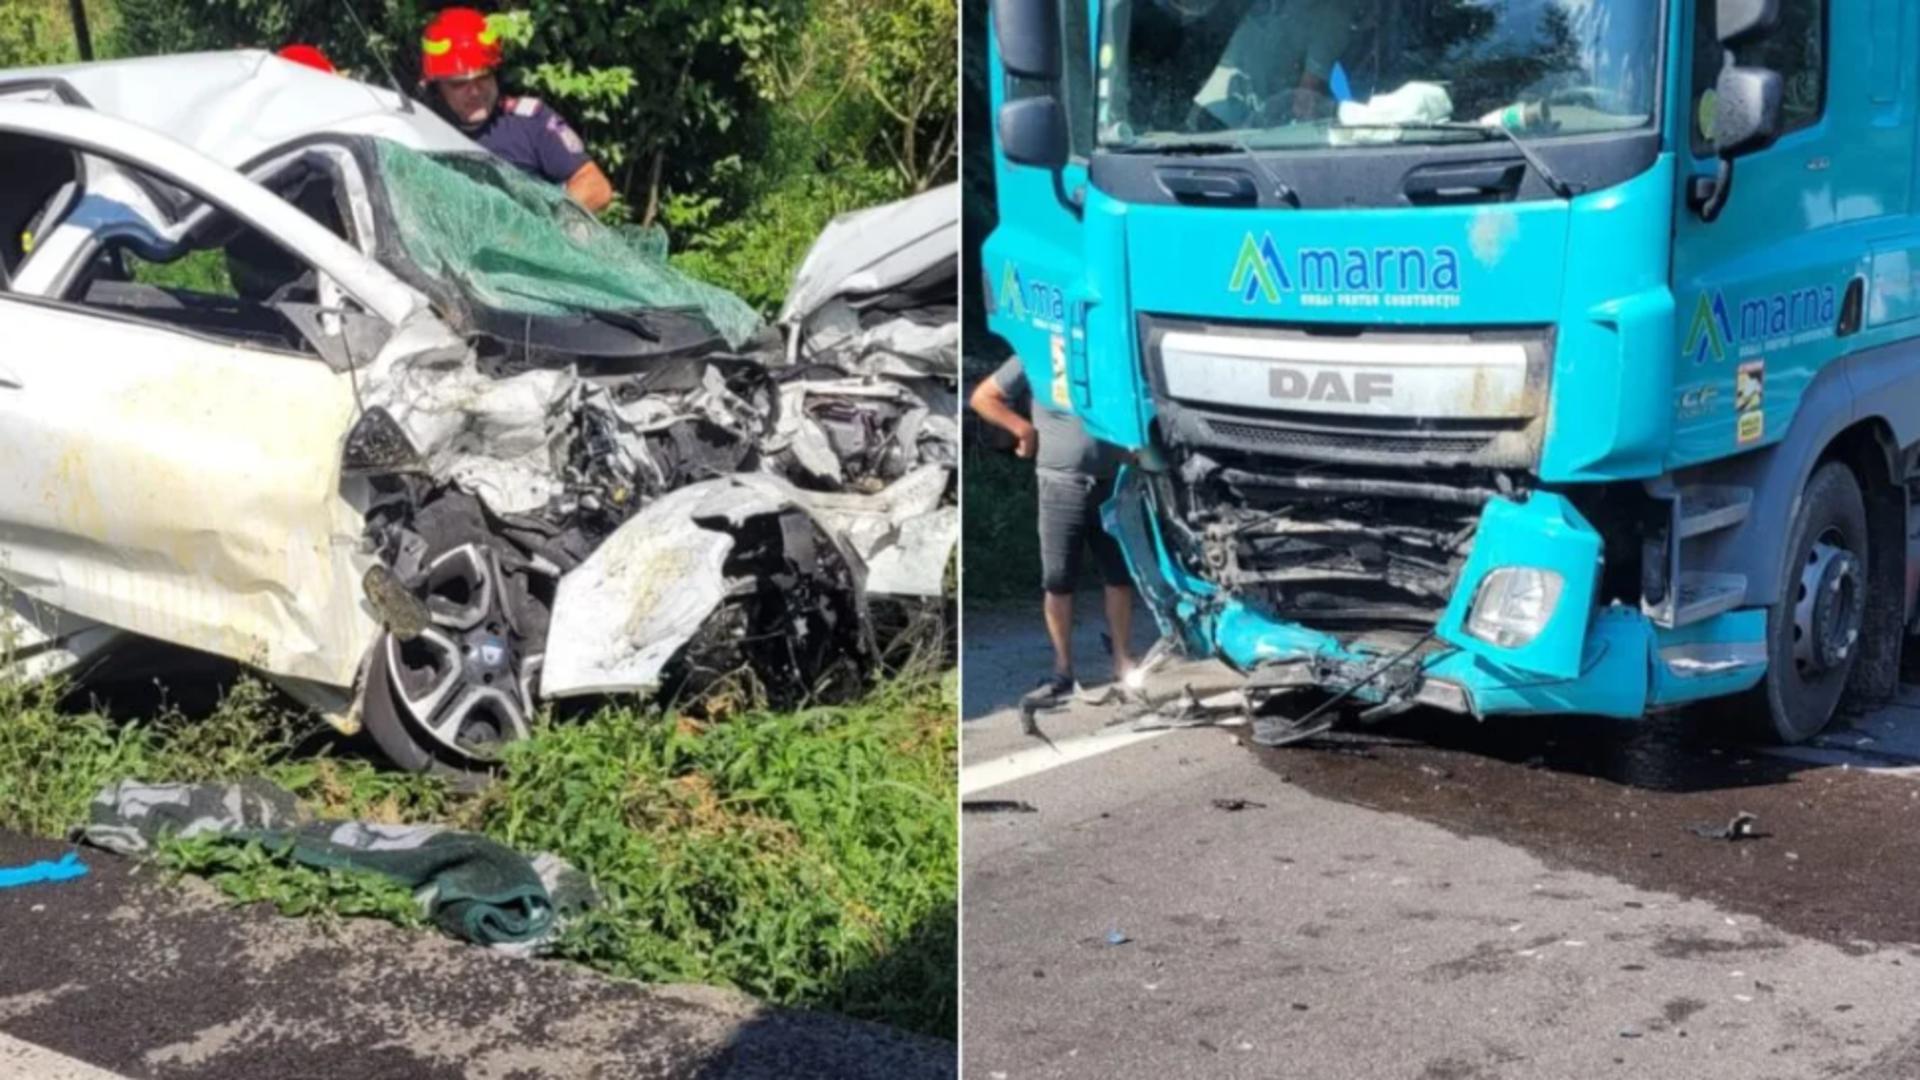 Val de accidente pe șoselele din România – Morți și răniți din cauza neatenției la volan